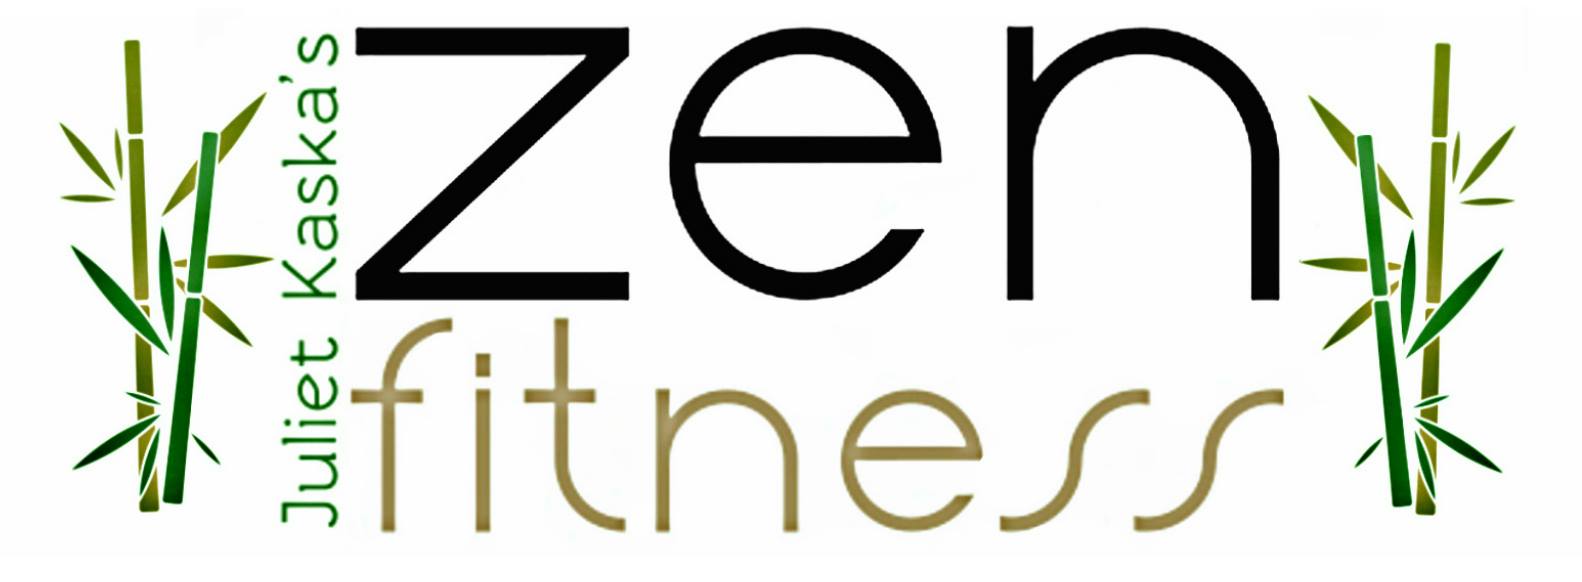 Jk Zen Fitness United States